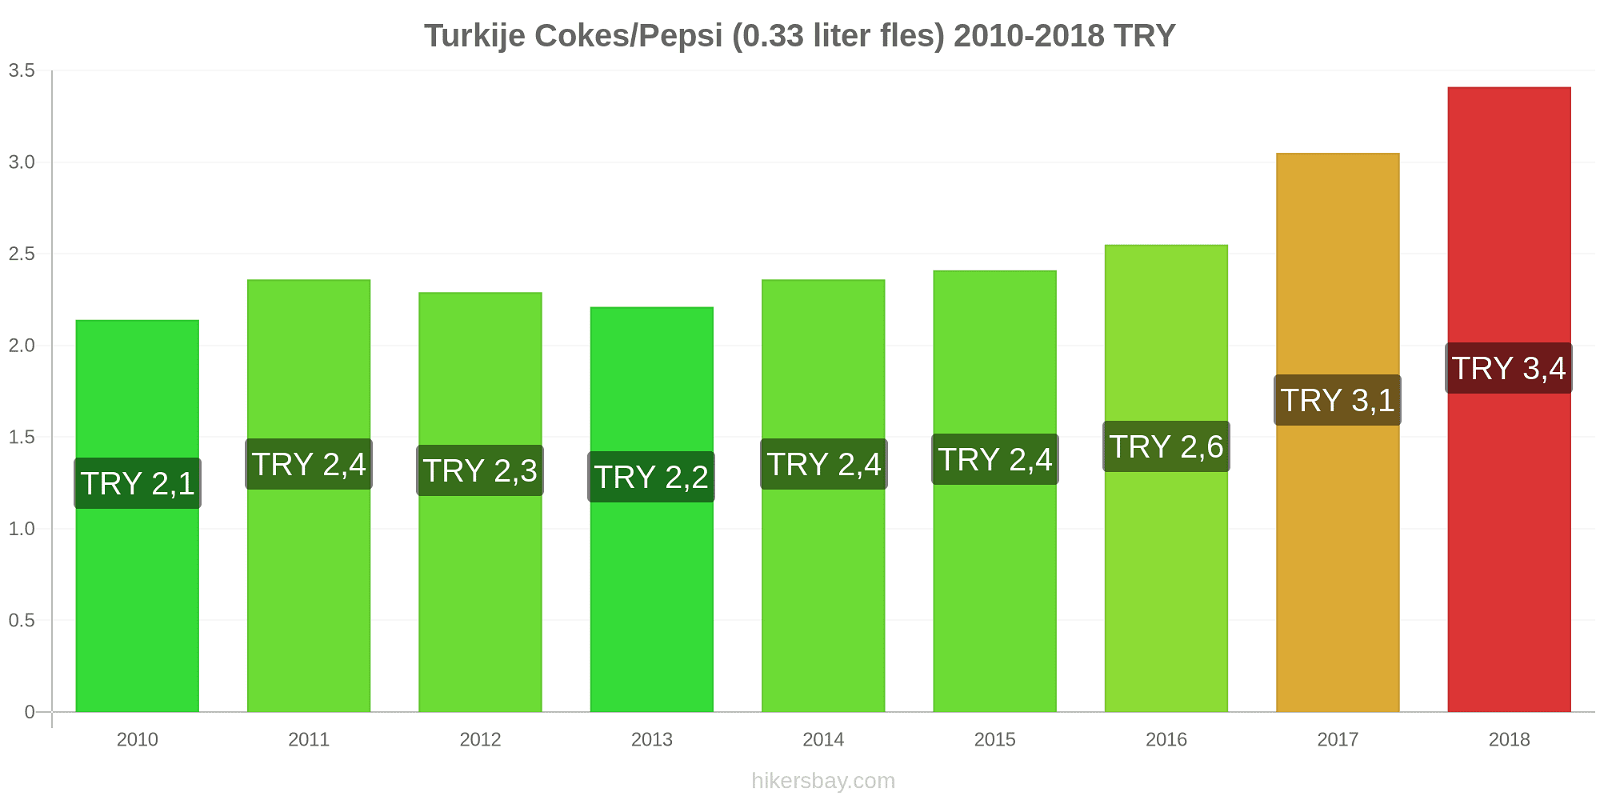 Turkije prijswijzigingen Cokes/Pepsi (0,33 literfles) hikersbay.com